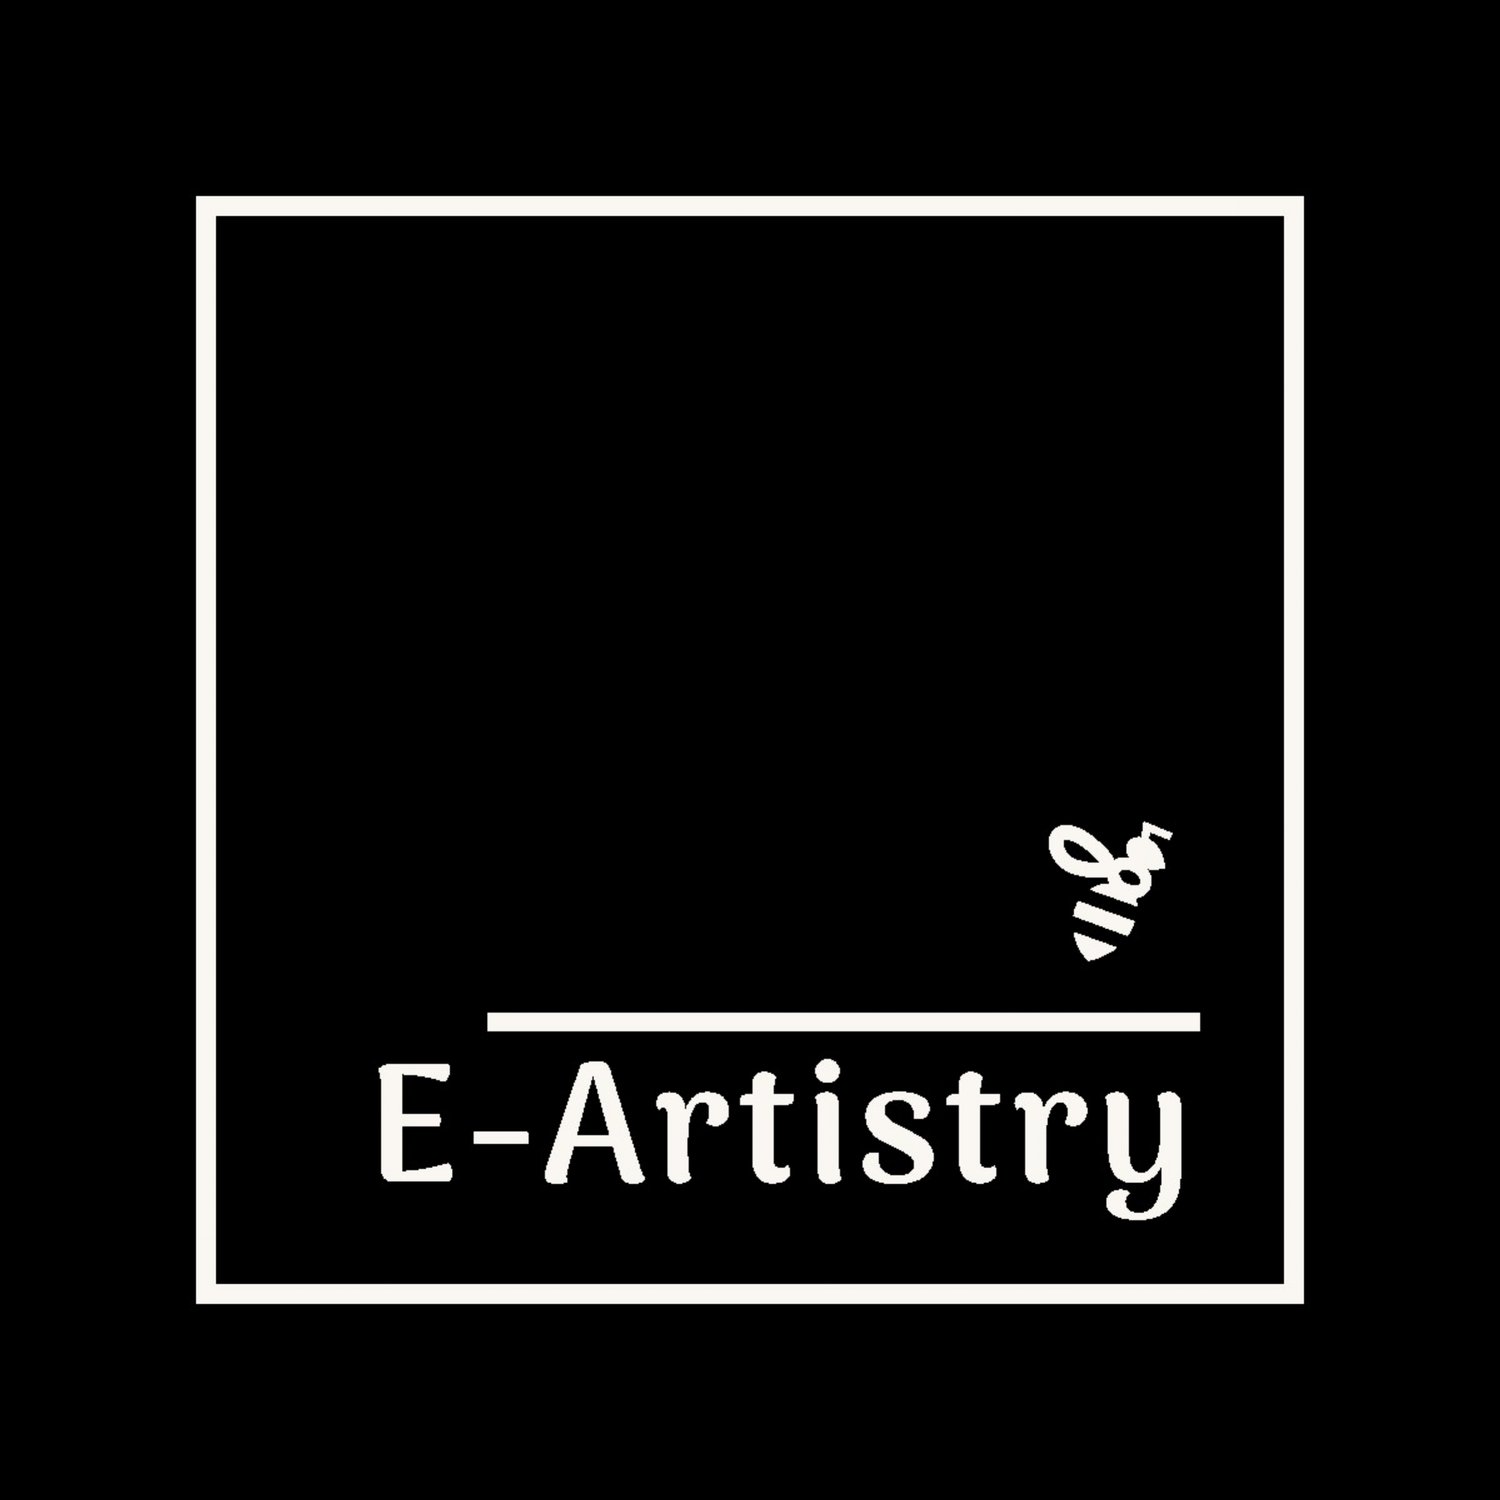 E-Artistry